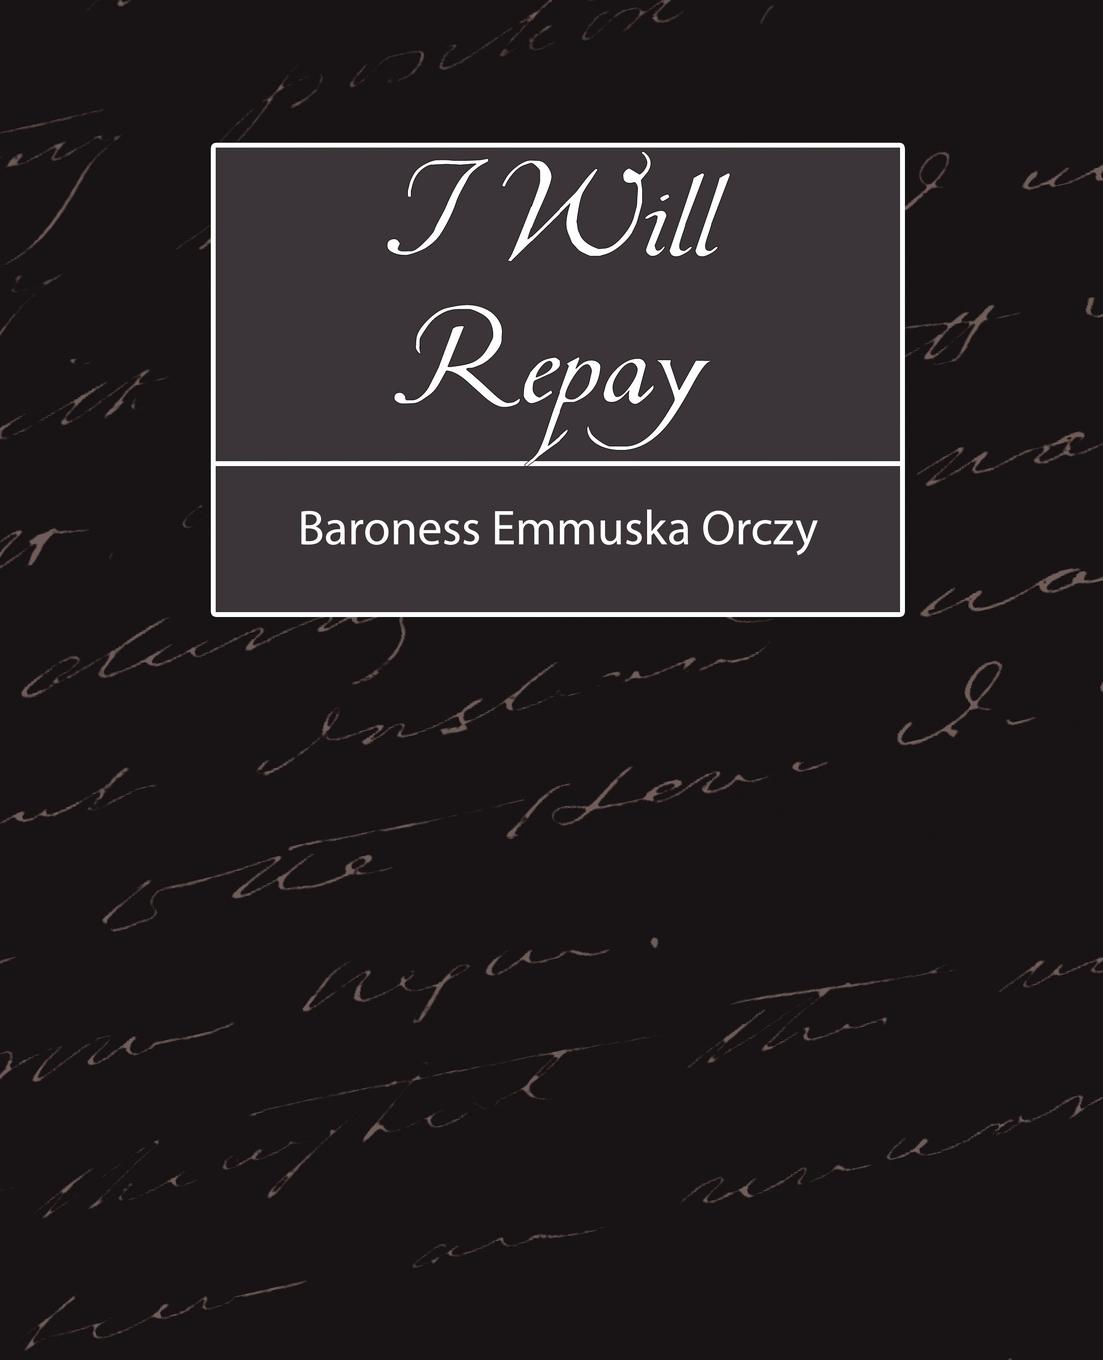 I Will Repay - Baroness Emmuska Orczy, Emmuska Orczy Baroness Emmuska Orczy